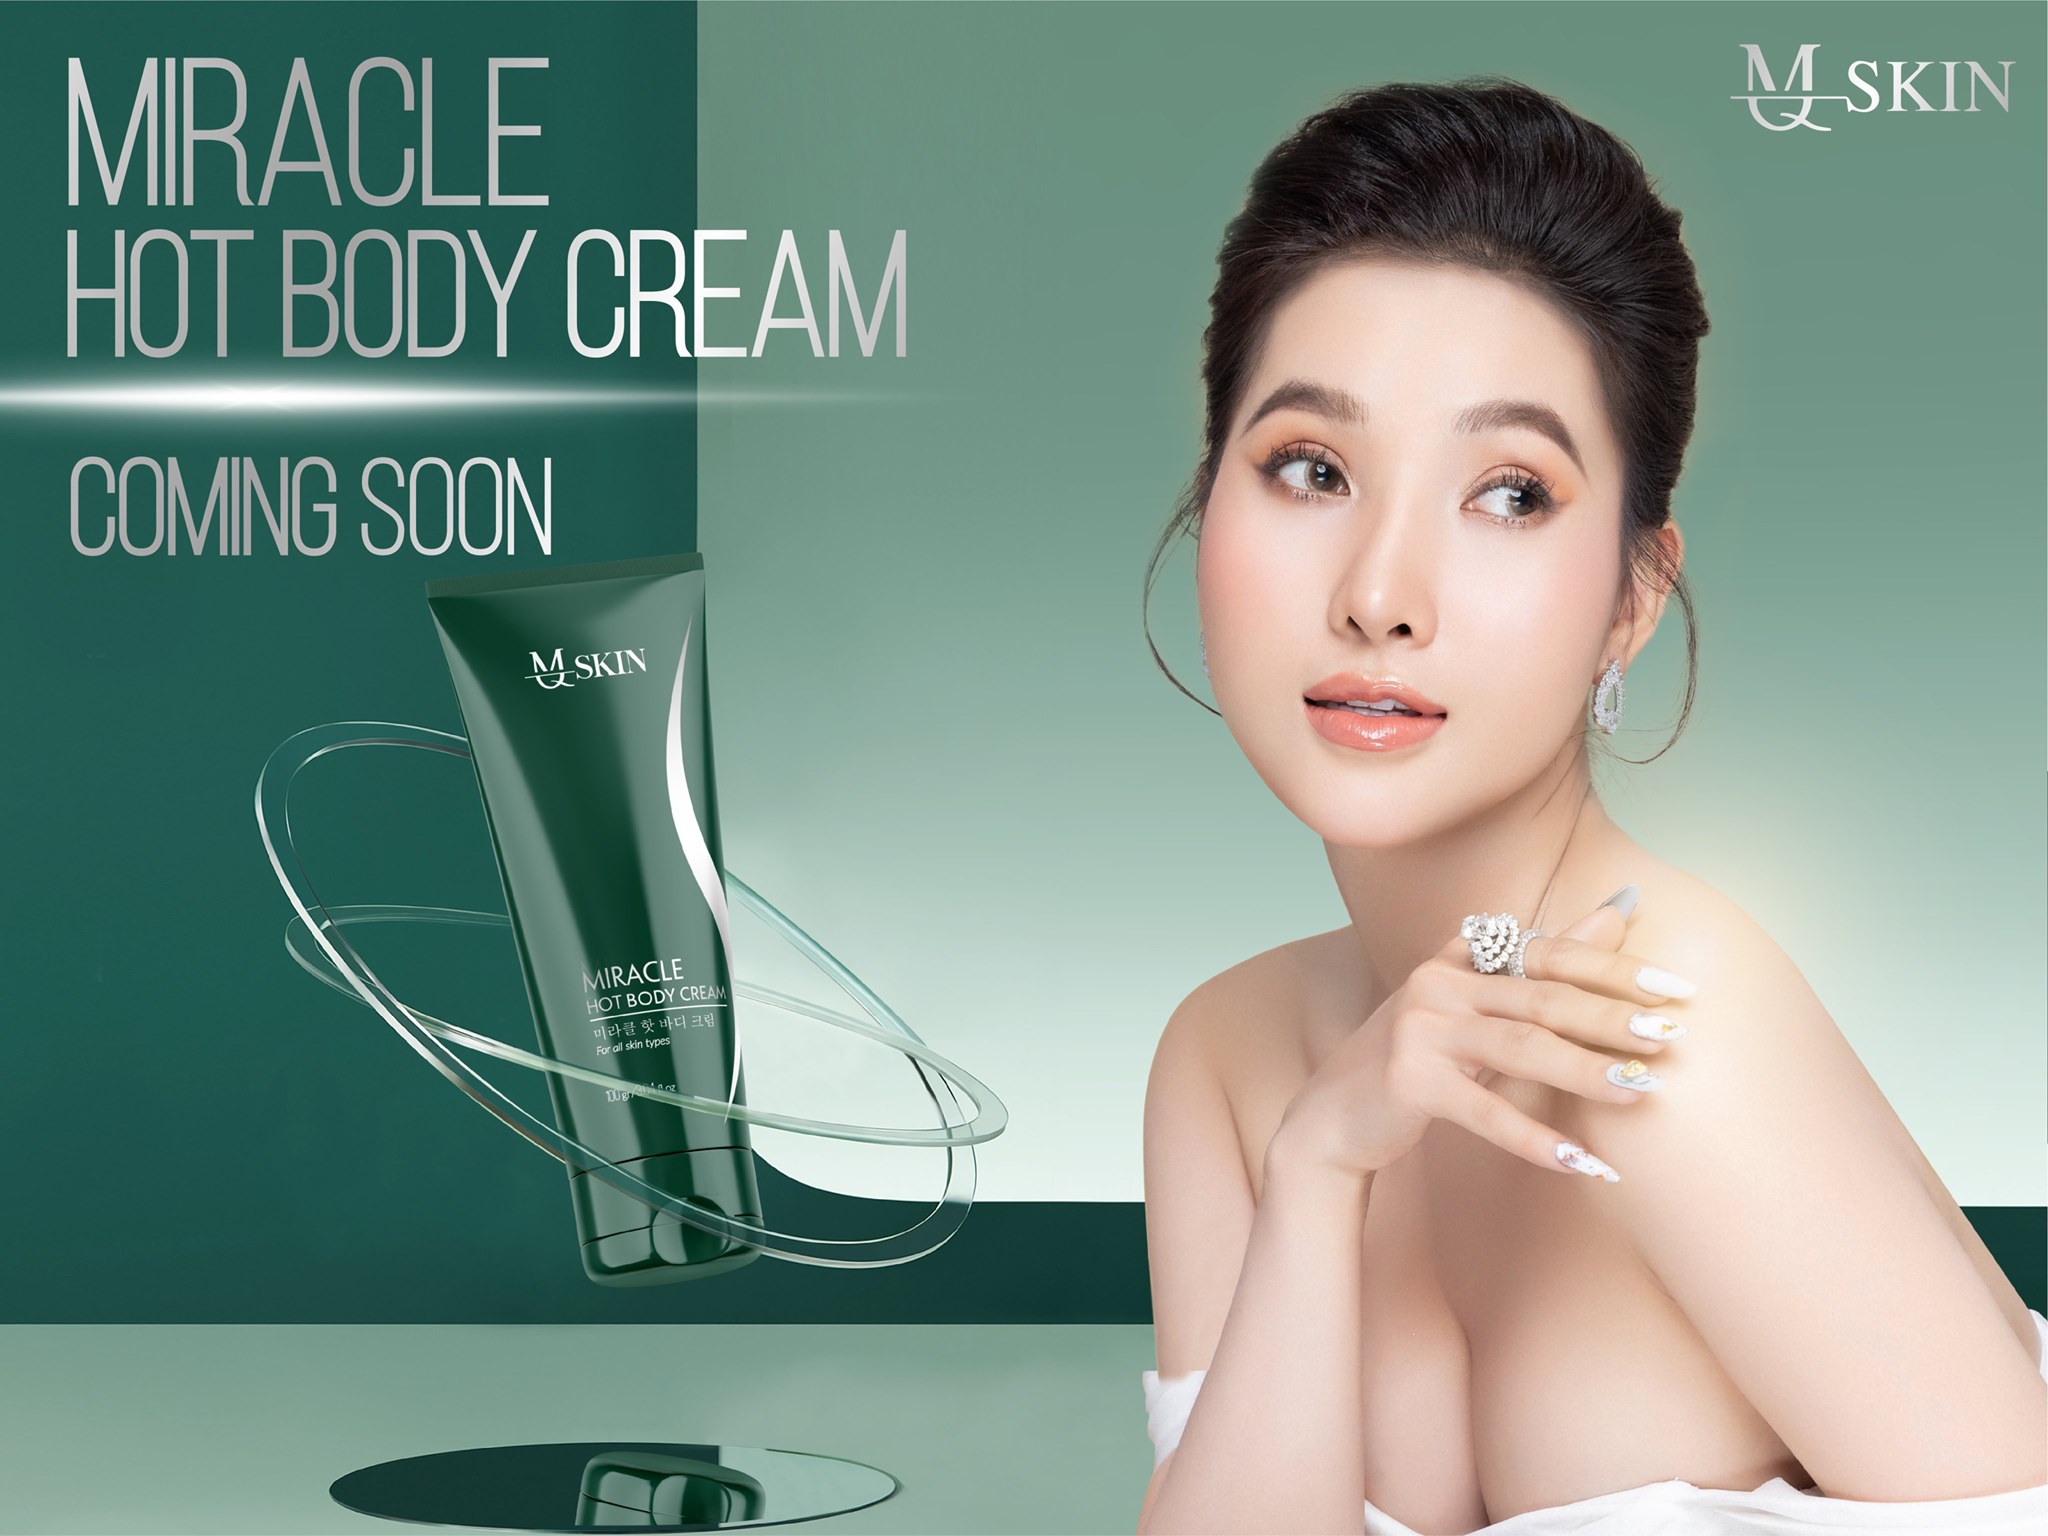 Kem truyền giảm mỡ Miracle hot body Cream MQ Skin chính hãng - 8936117150395